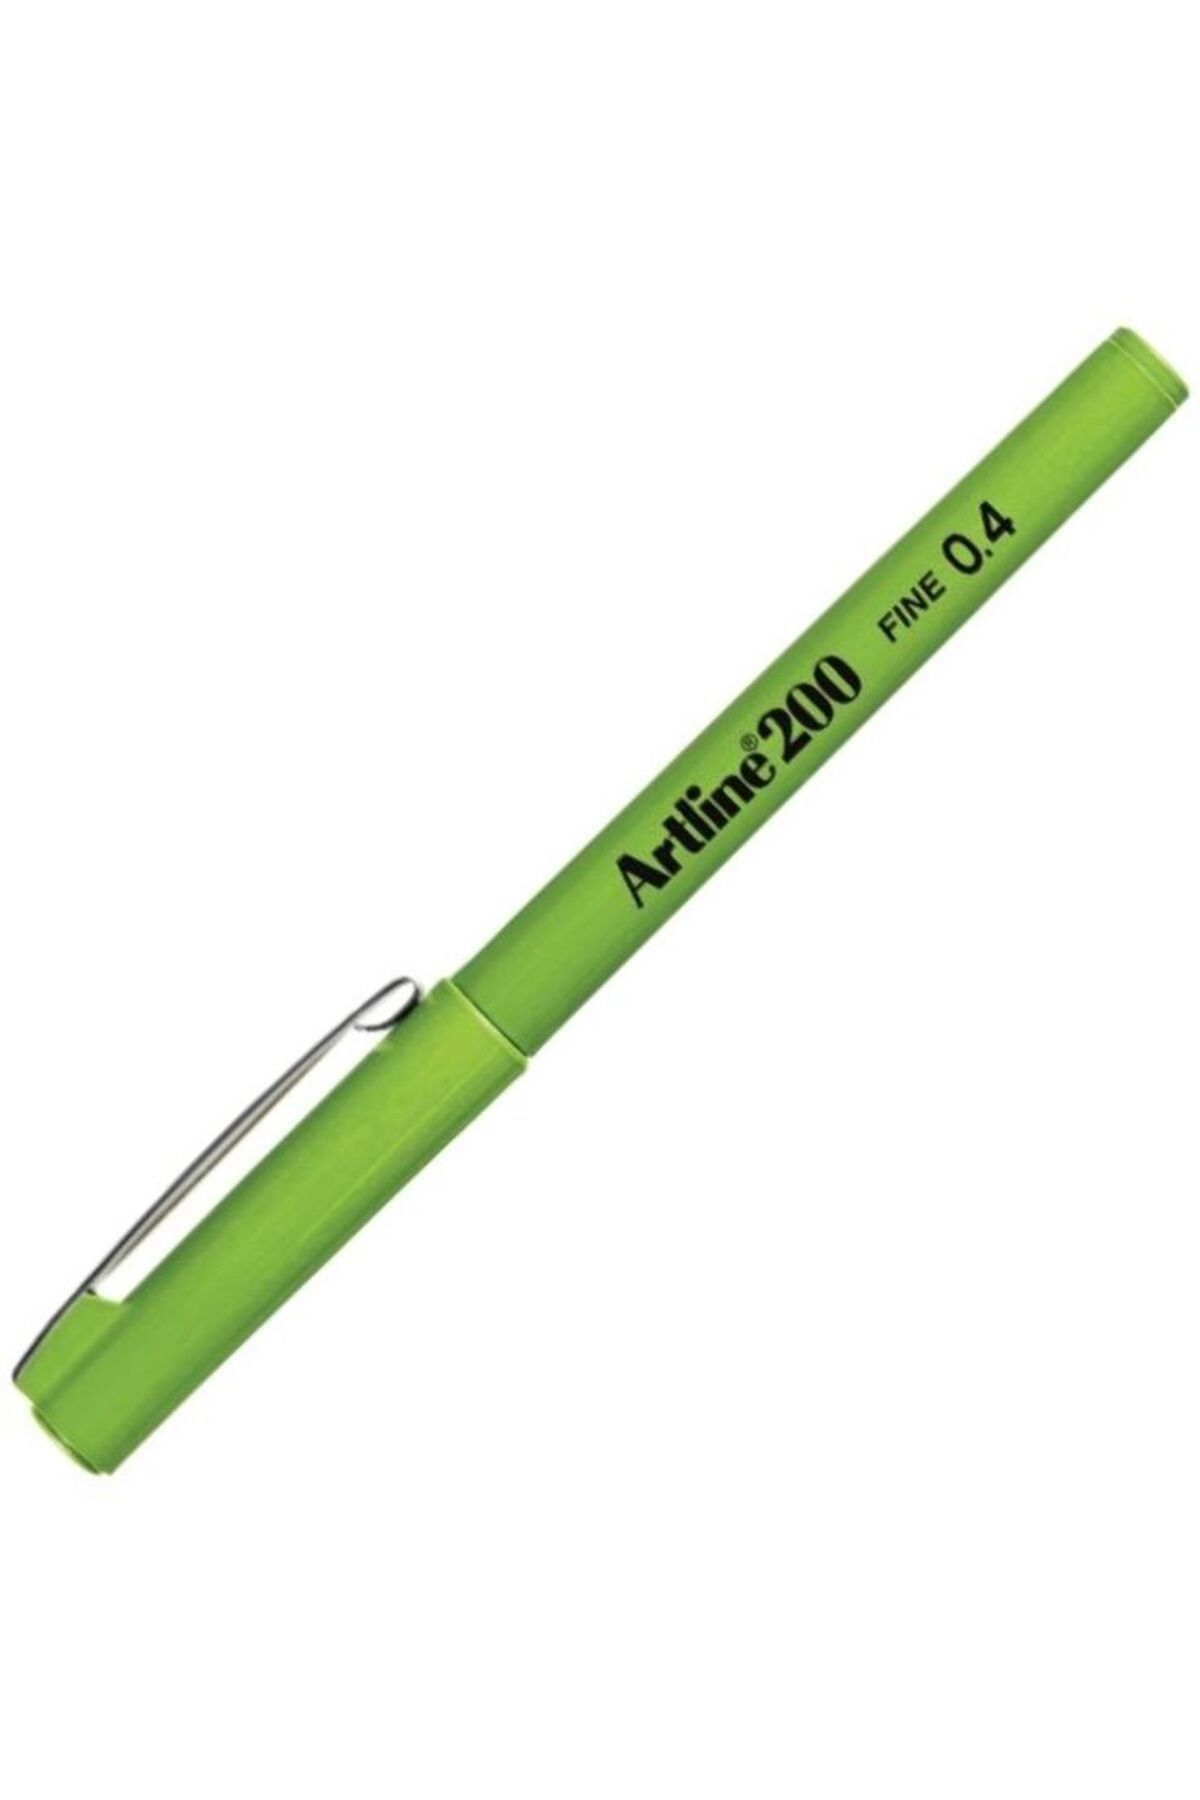 Modellino Fineliner Artline200 İnce Uçlu 0.4mm Yazı Ve Teknik Çizim Kalemi - Renk Seçenekli 1 Adet